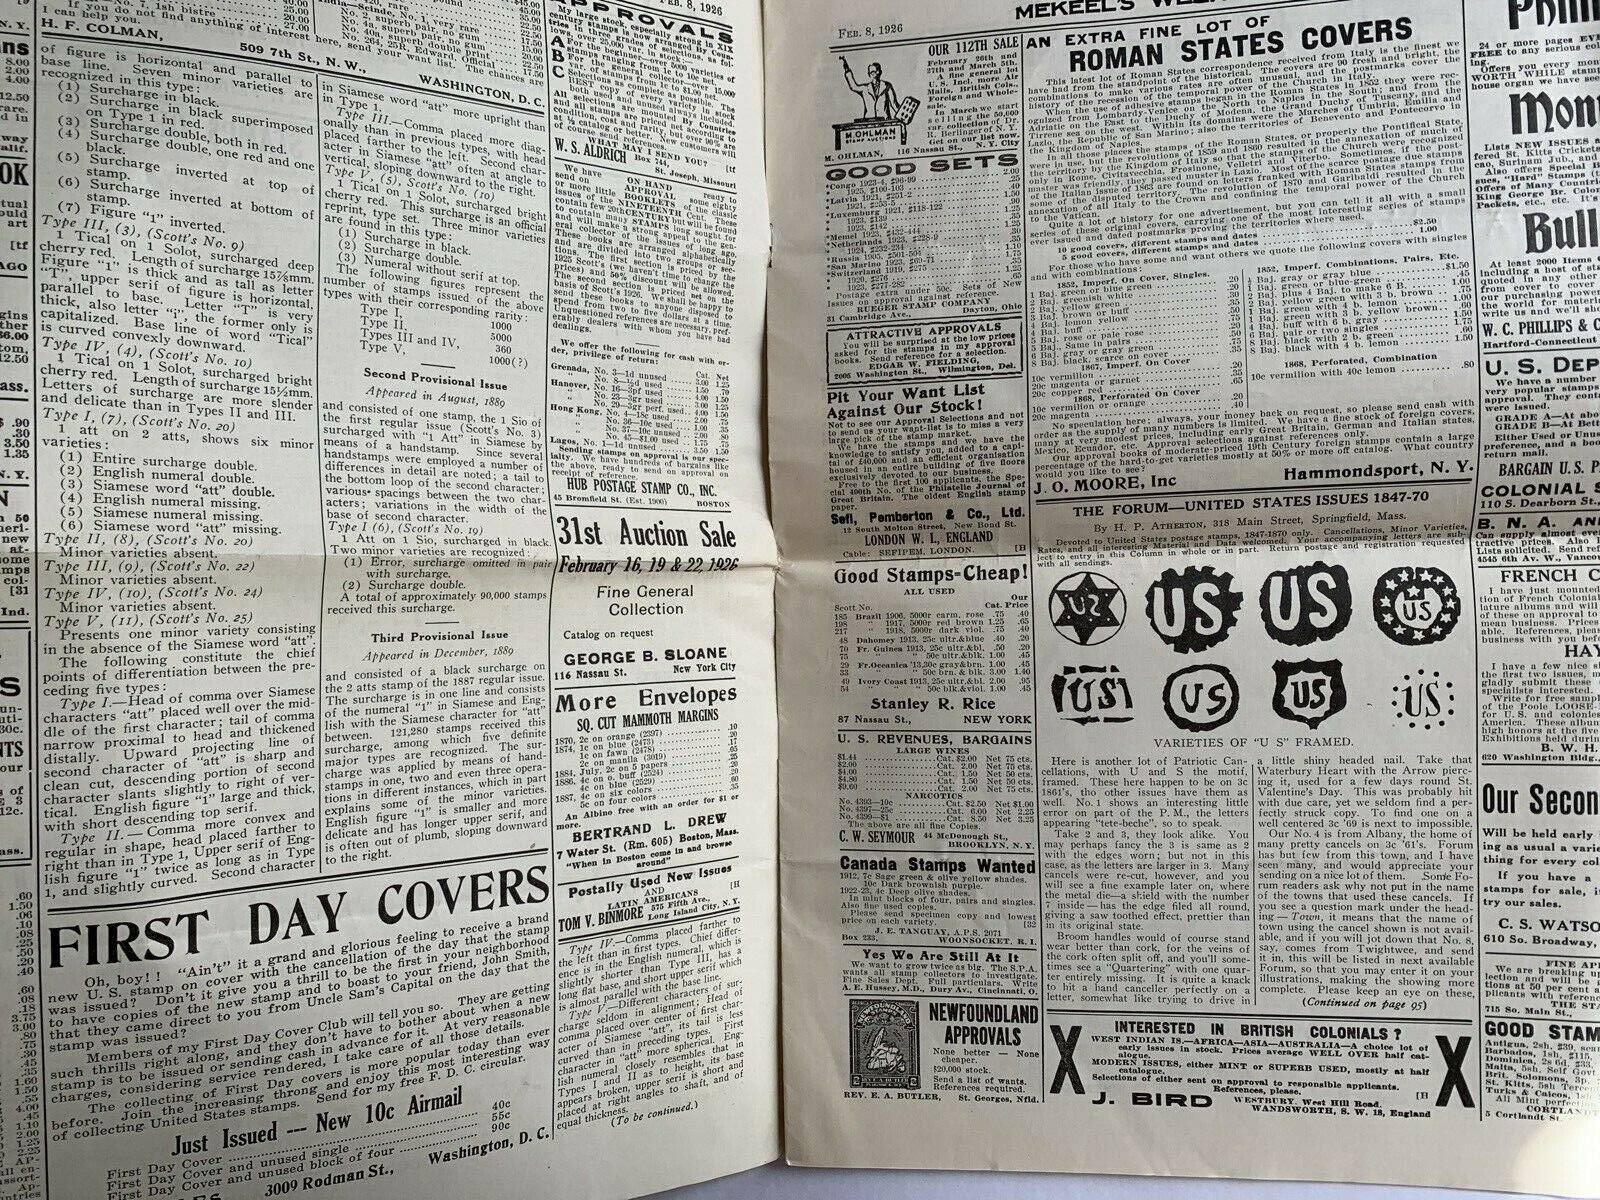 Vintage Philatetic News, 2 Mekeel's Weekly Stamp News April 12 1919 & Feb 8 1926 Mekeel's - фотография #8